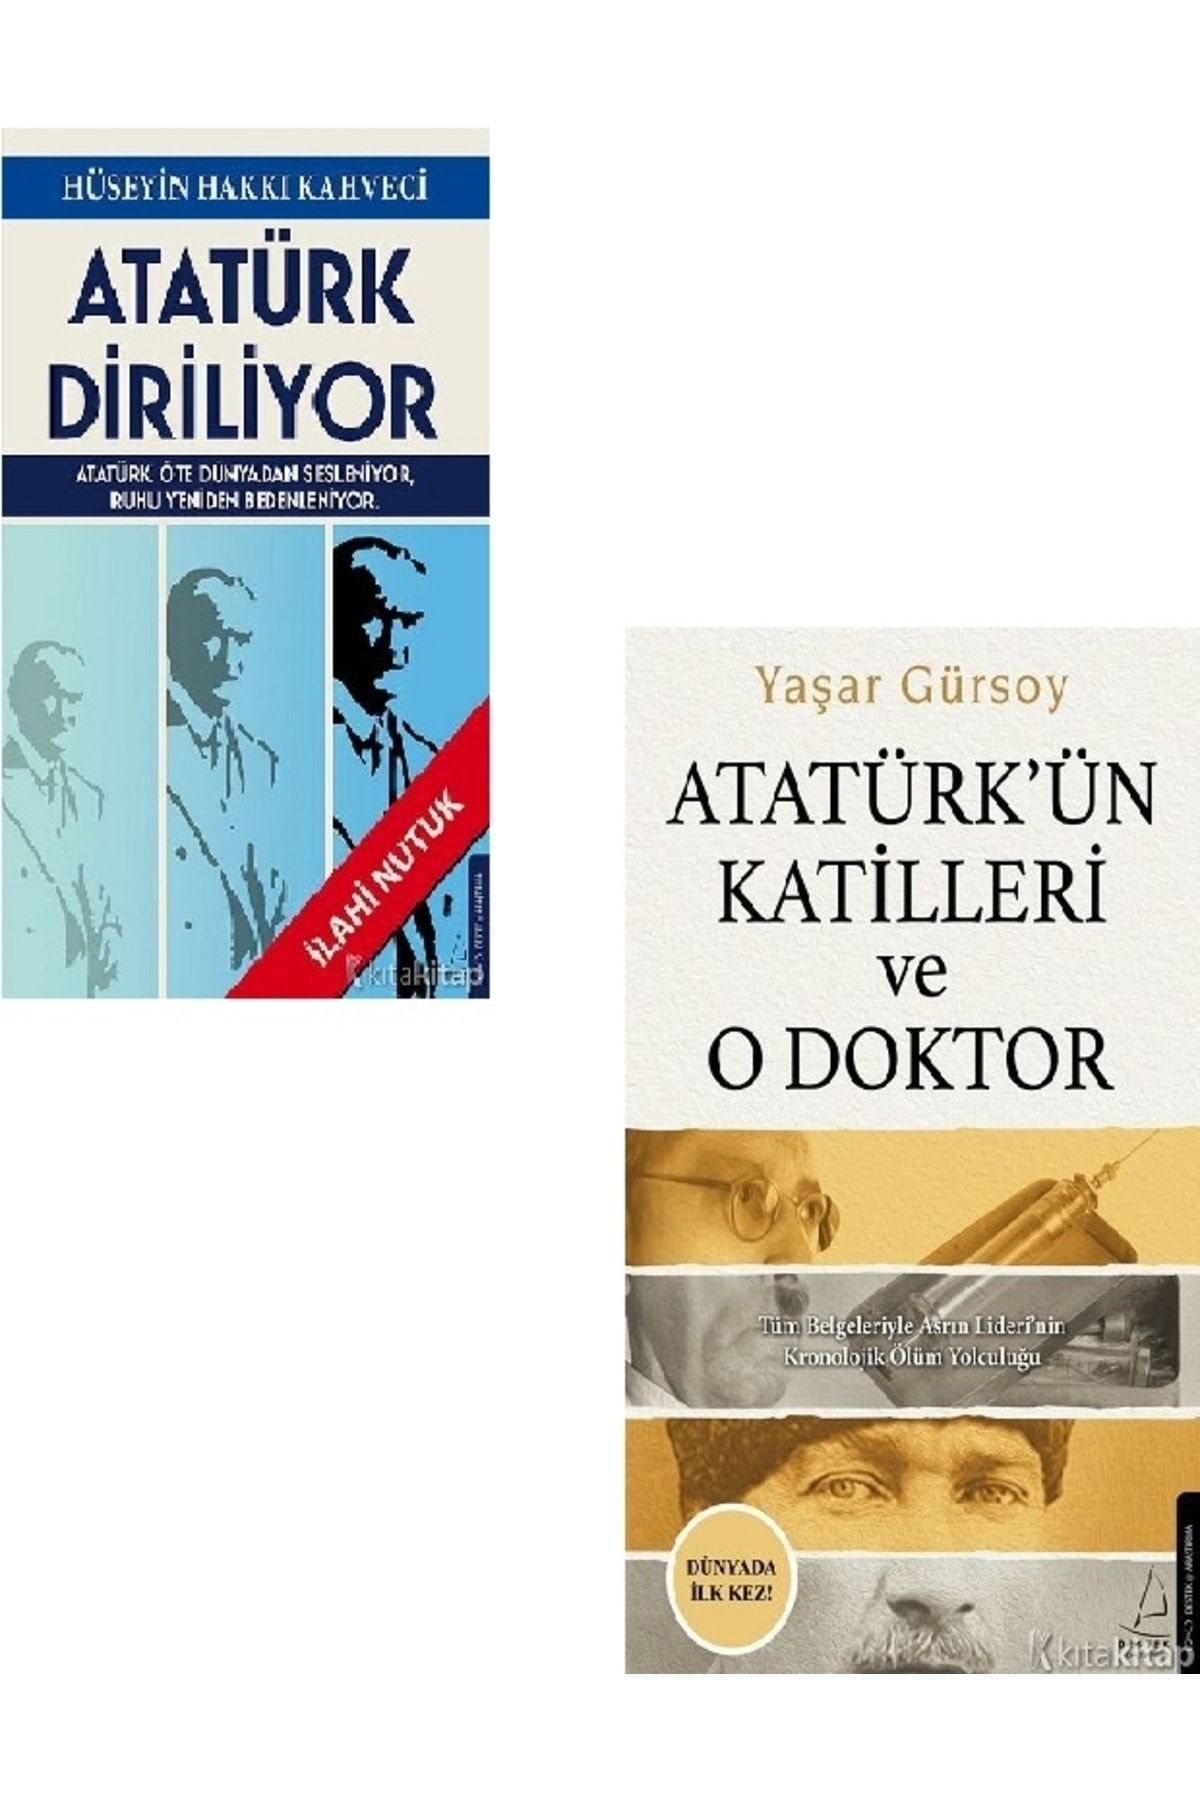 Kronik Kitap Atatürk Diriliyor - Atatürk’ün Katilleri ve O Doktor - Yaşar Gürsoy - Hüseyin Hakkı Kahveci 2 KİTAP